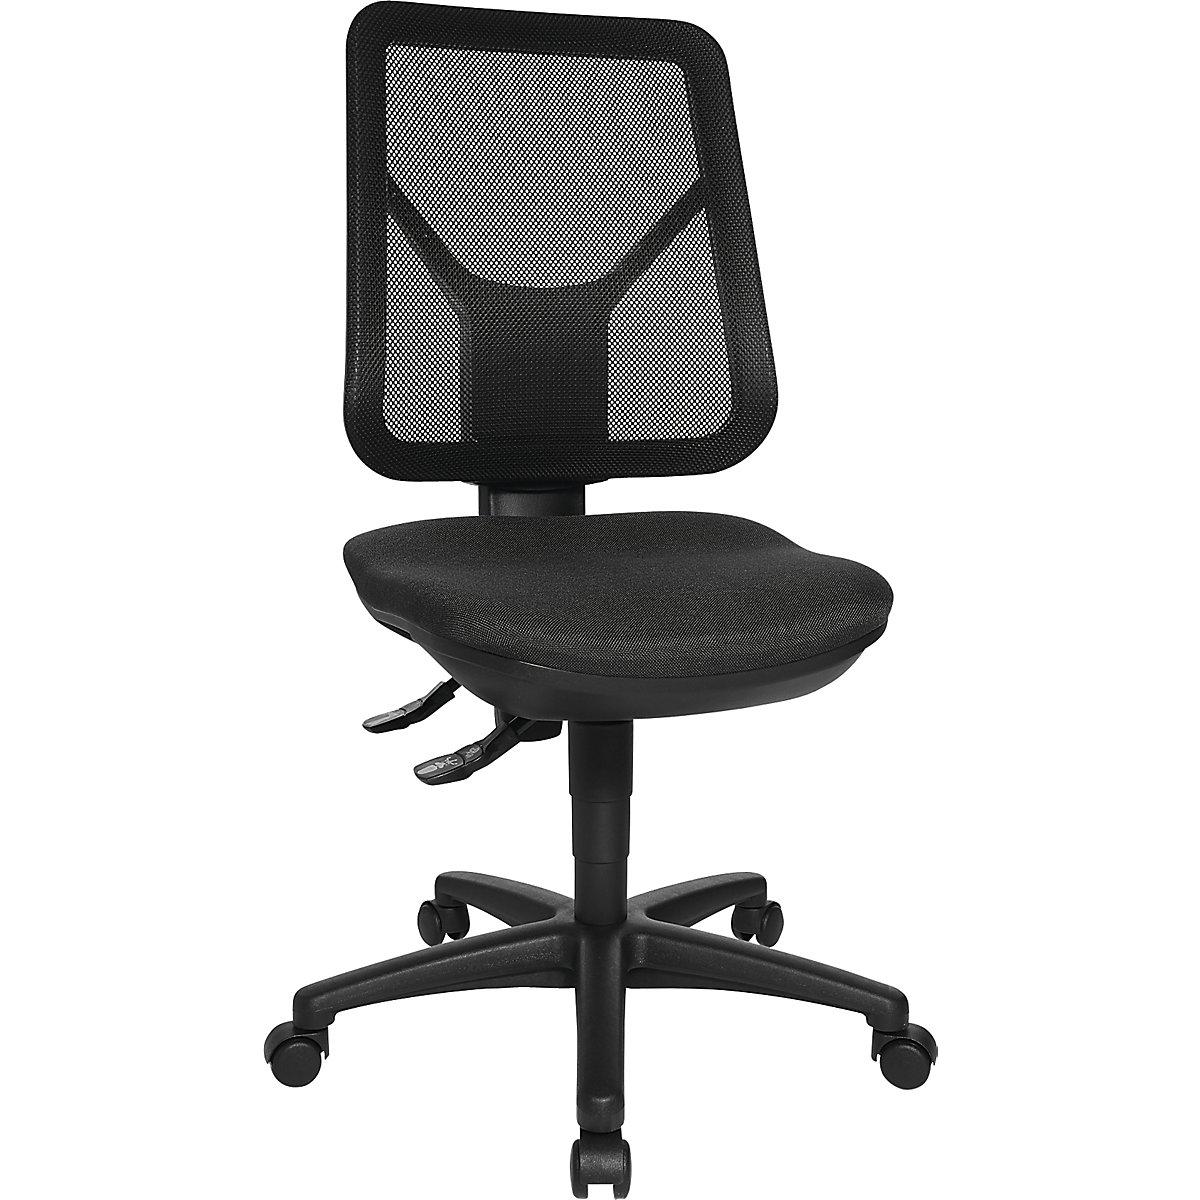 Ergonomic swivel chair – Topstar, mesh back rest, black-3